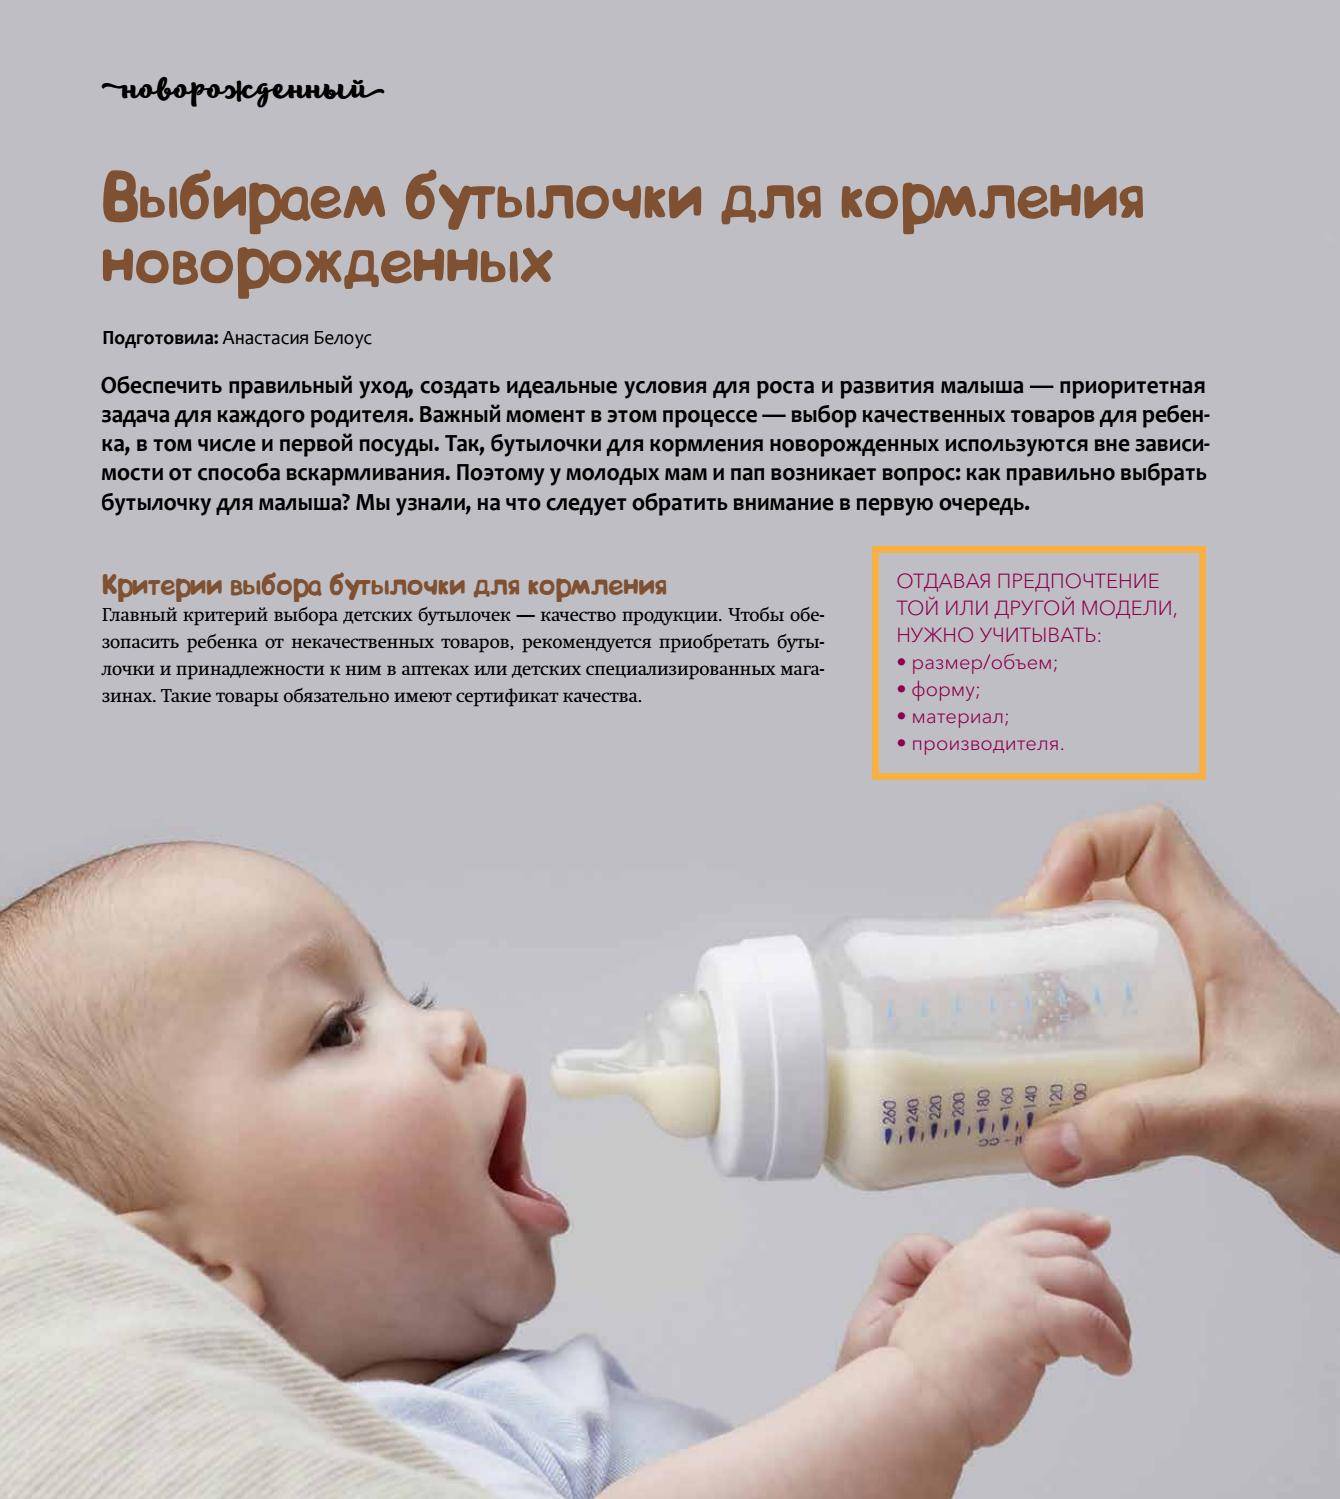 Техника вскармливания. Как правильно держать новорожденного при кормлении из бутылочки. Как нужно правильно кормить новорожденного смесью из бутылочки. Положение для кормления из бутылочки. Кормление из бутылки грудникчк.